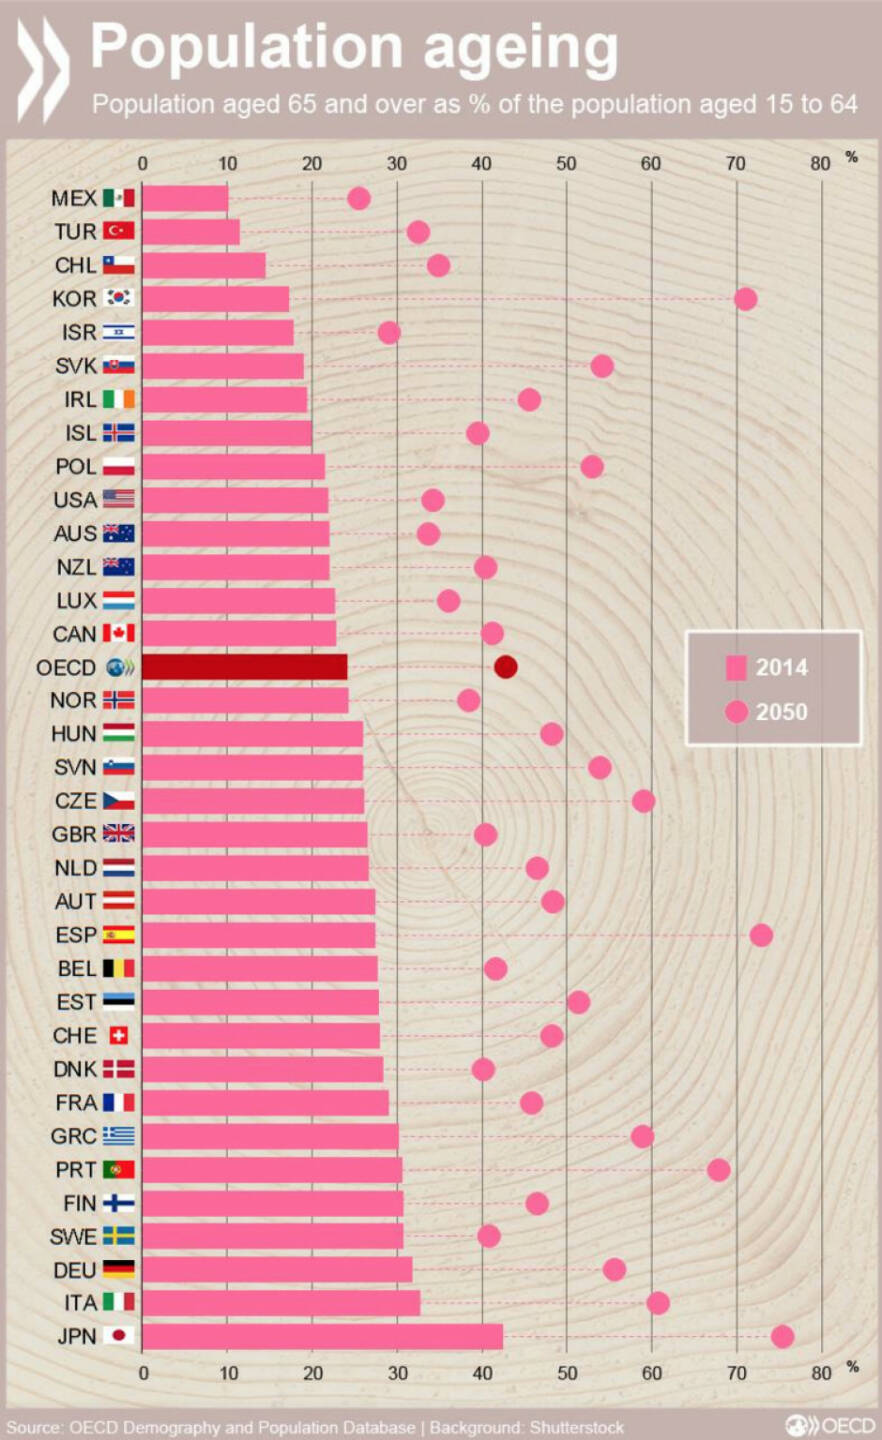 Das Verhältnis zwischen den Altersgruppen 15-64 und 65+ wird sich in allen OECD-Ländern bis 2050 drastisch verändern, am stärksten in Südkorea und Spanien. 

Mehr Daten zum Thema: http://bit.ly/251XrxR